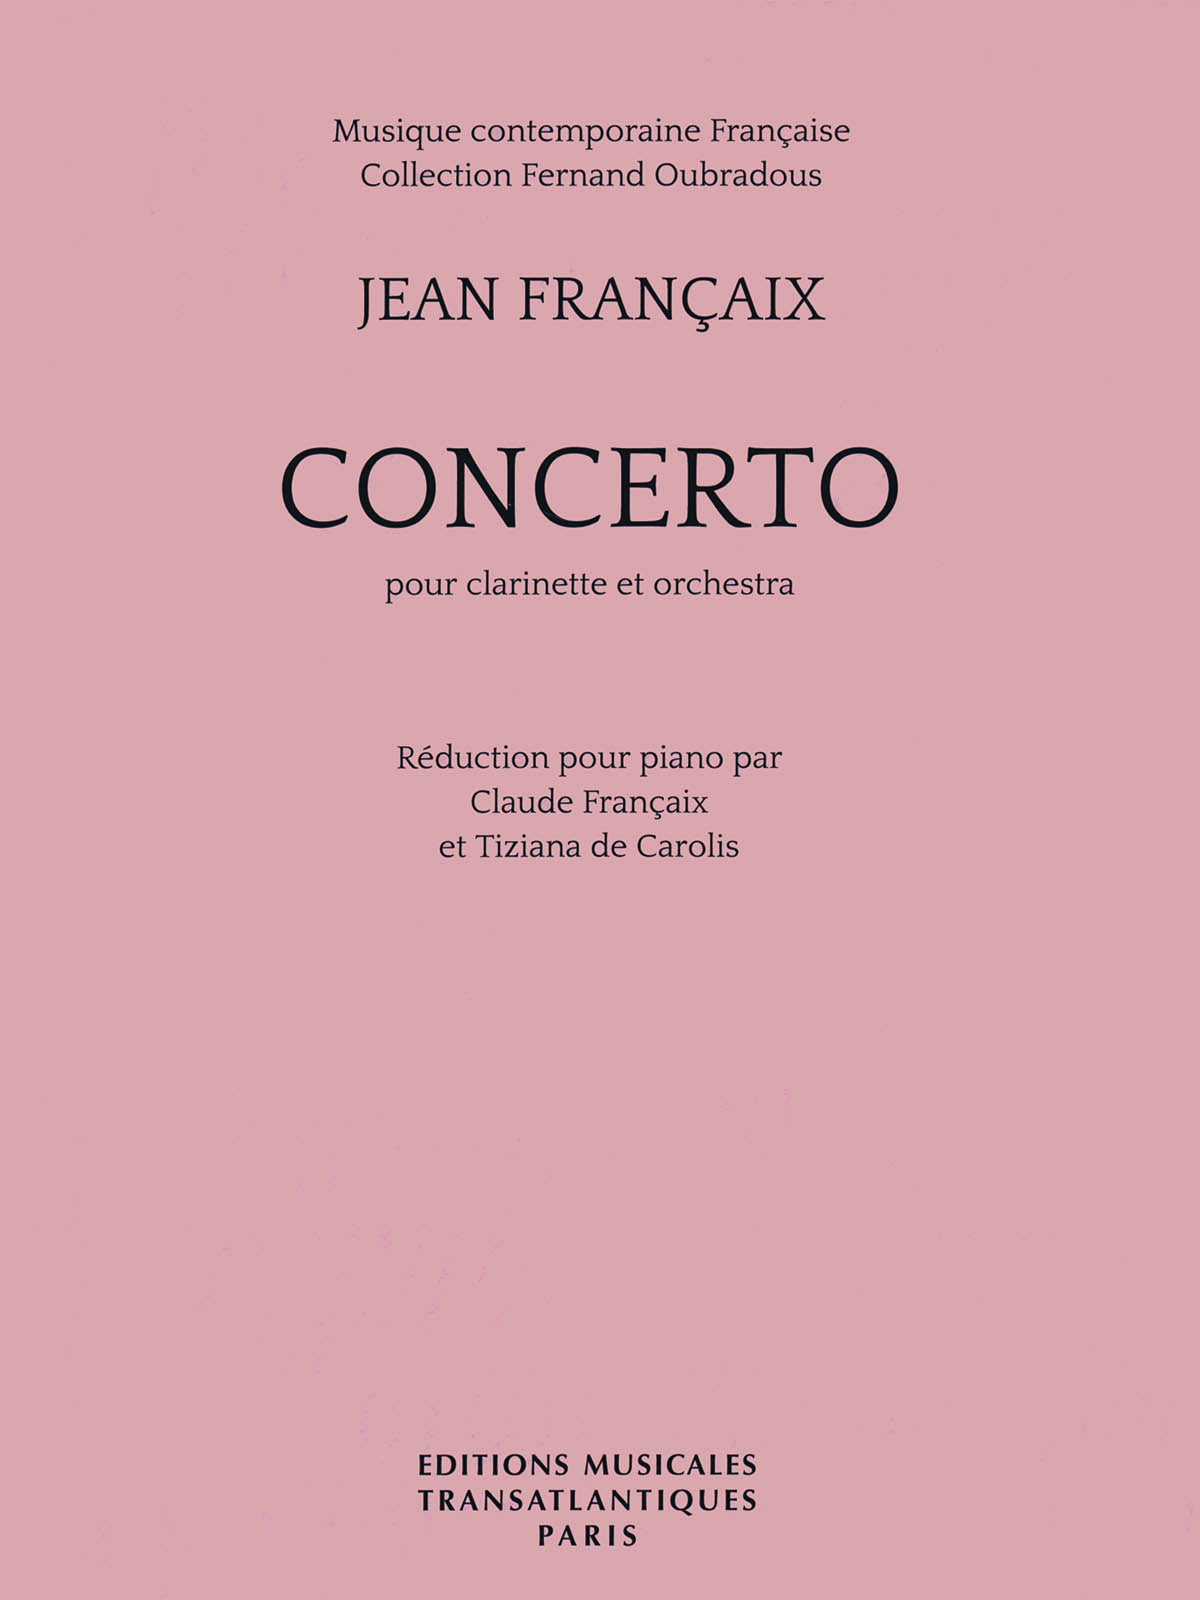 Françaix: Clarinet Concerto